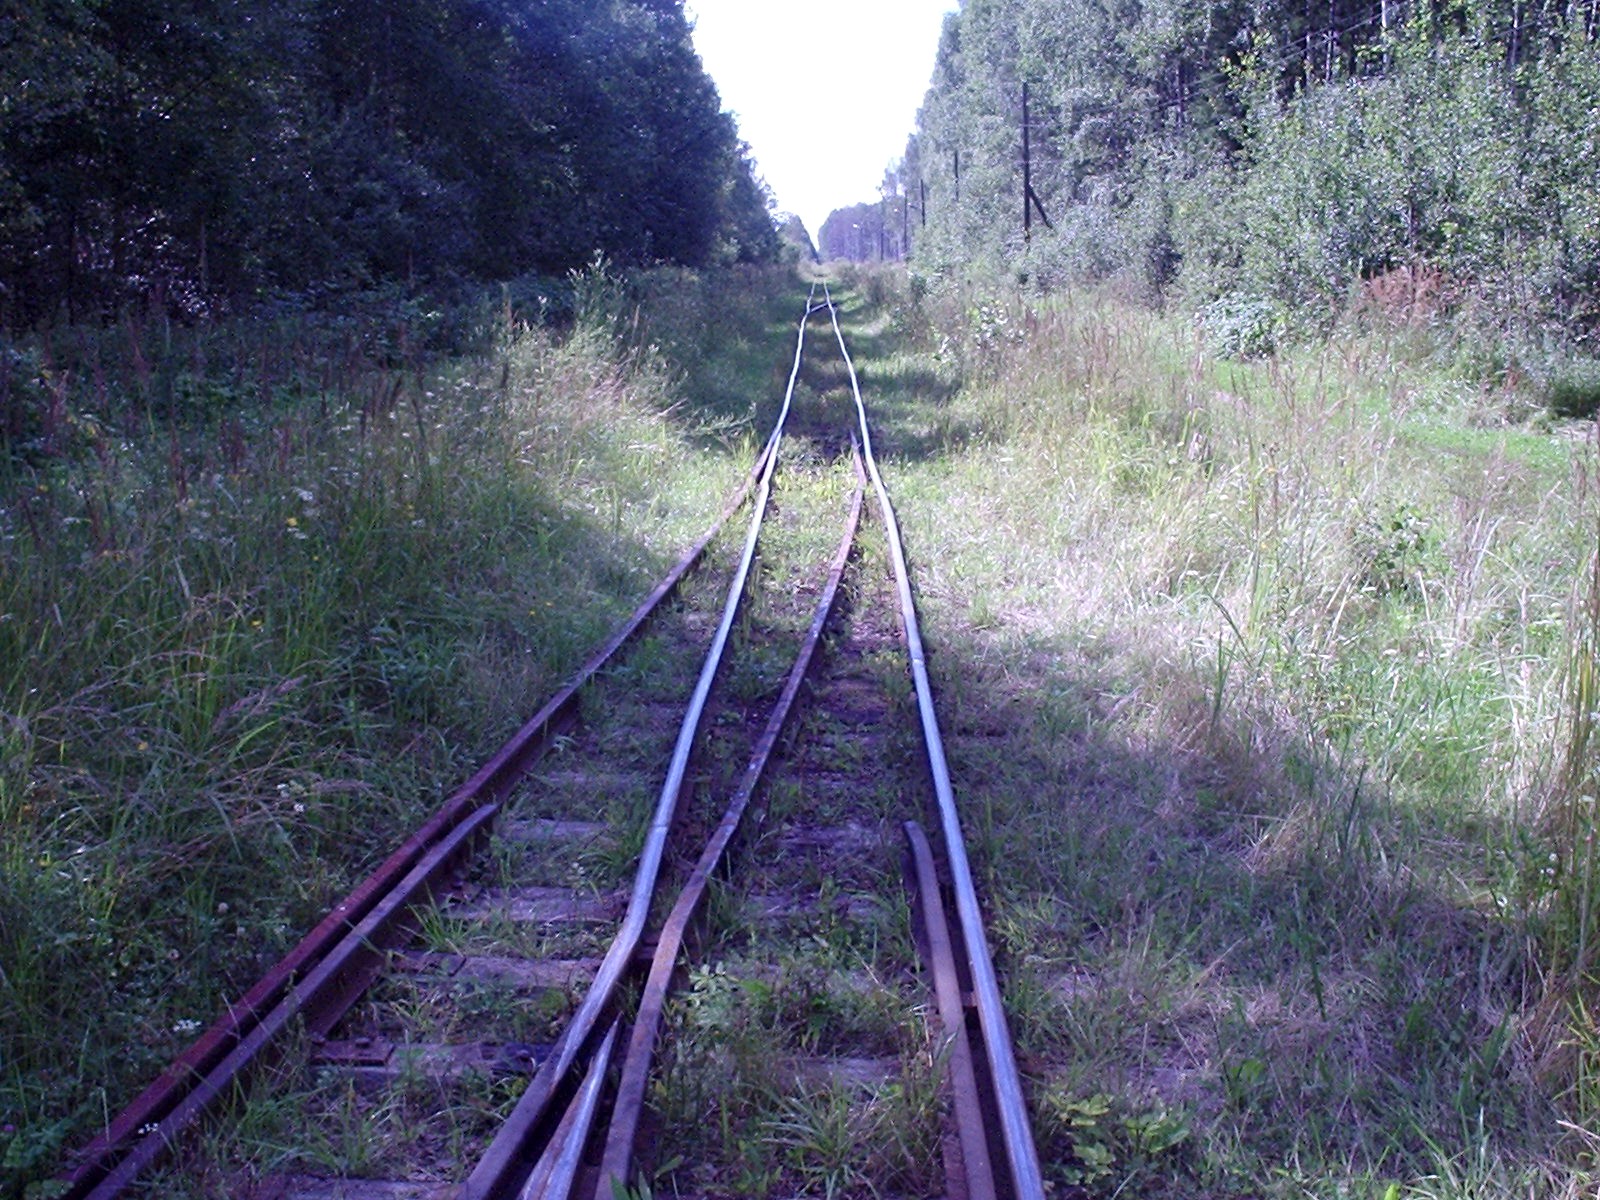 Узкоколейная железная дорога Васильевского предприятия промышленного железнодорожного транспорта  — фотографии, сделанные в 2005 году (часть 16)